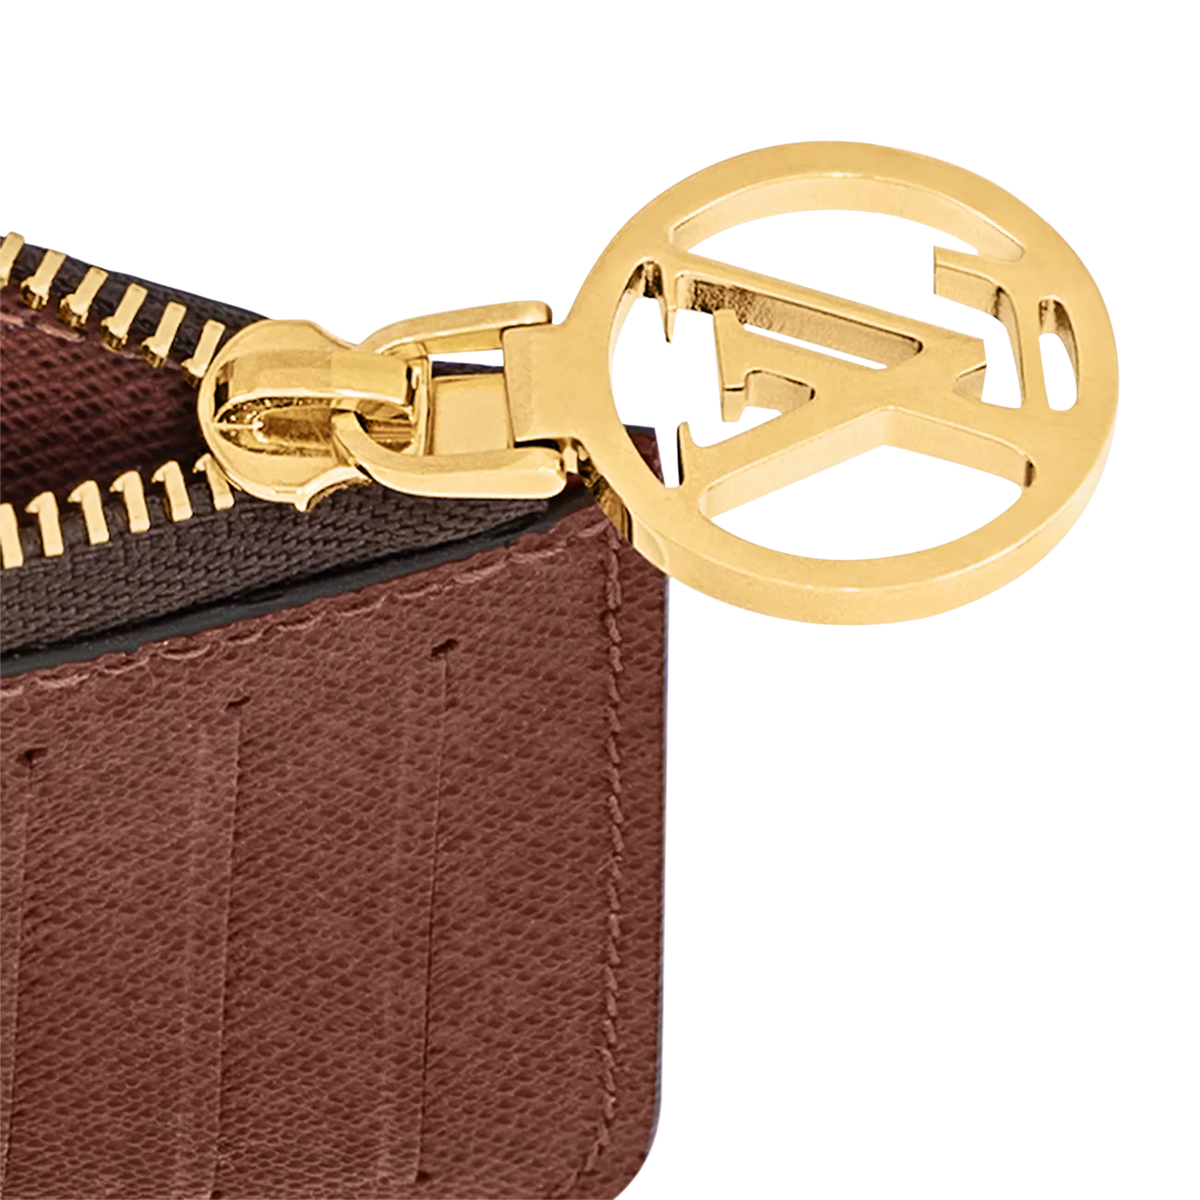 Louis Vuitton Romy Card Holder – The Bag Broker